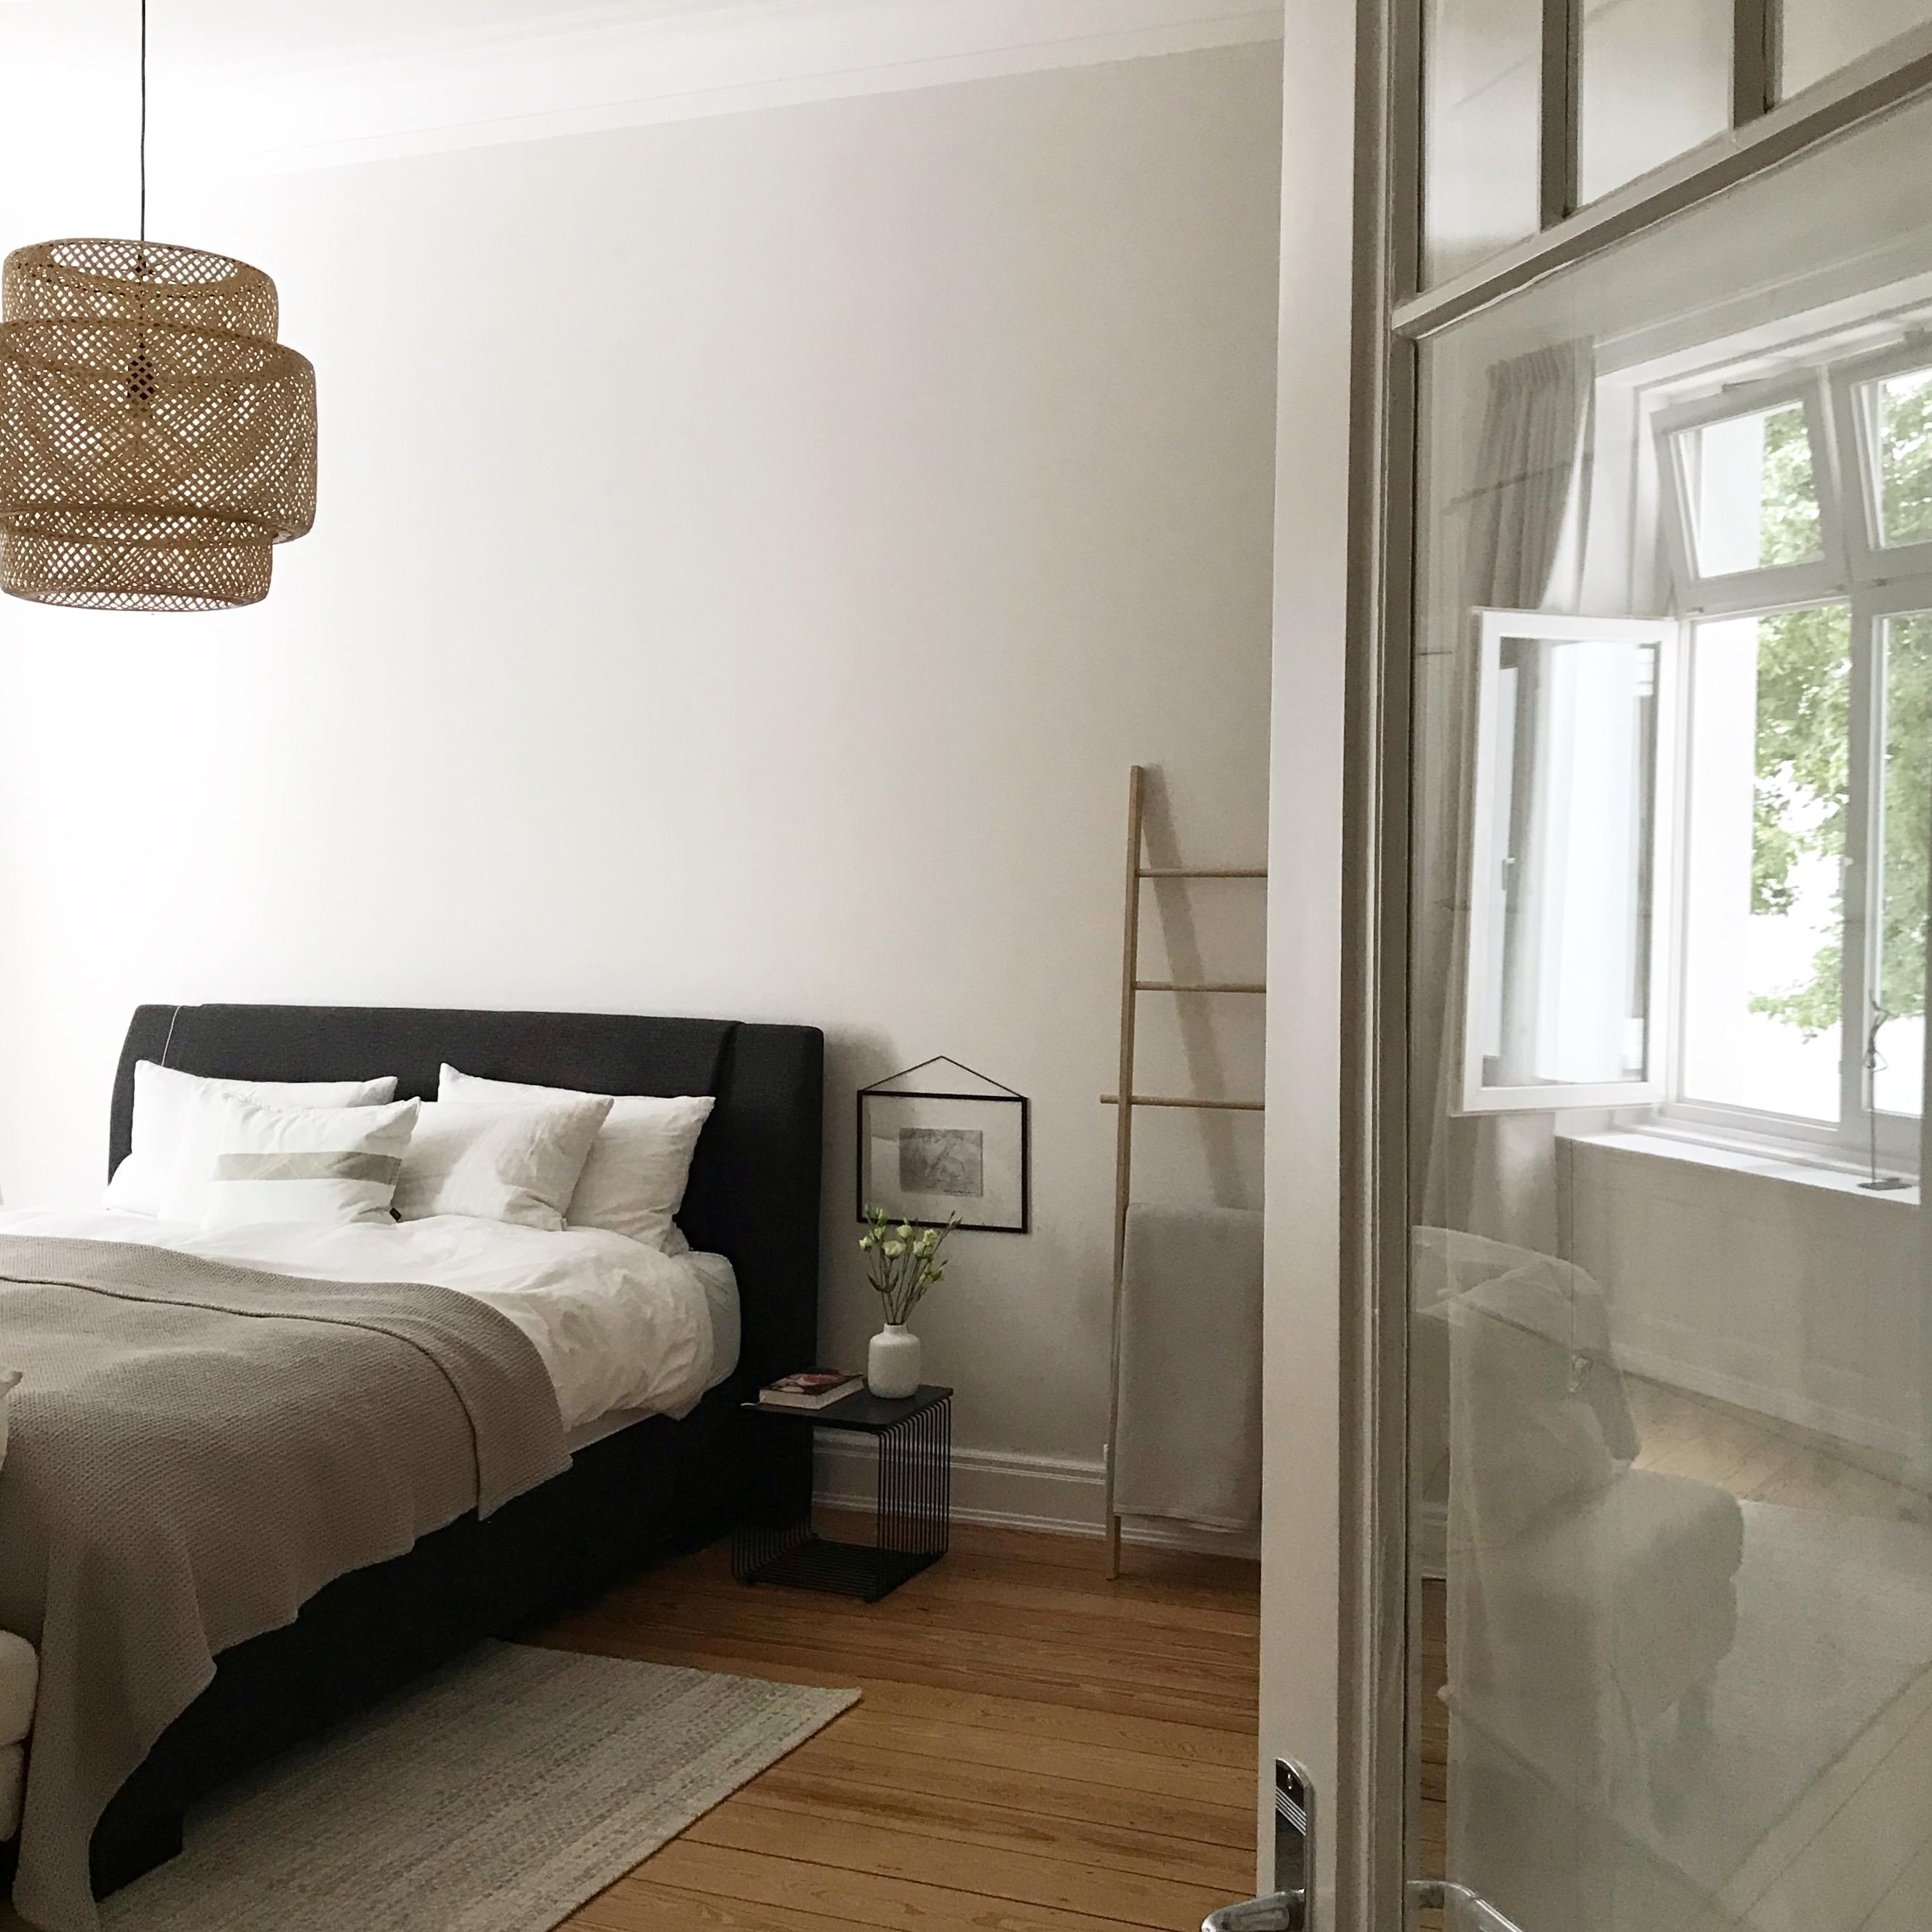 #bedroom #bed #kleiderleiter
#schlafzimmer #window #fenster #bett